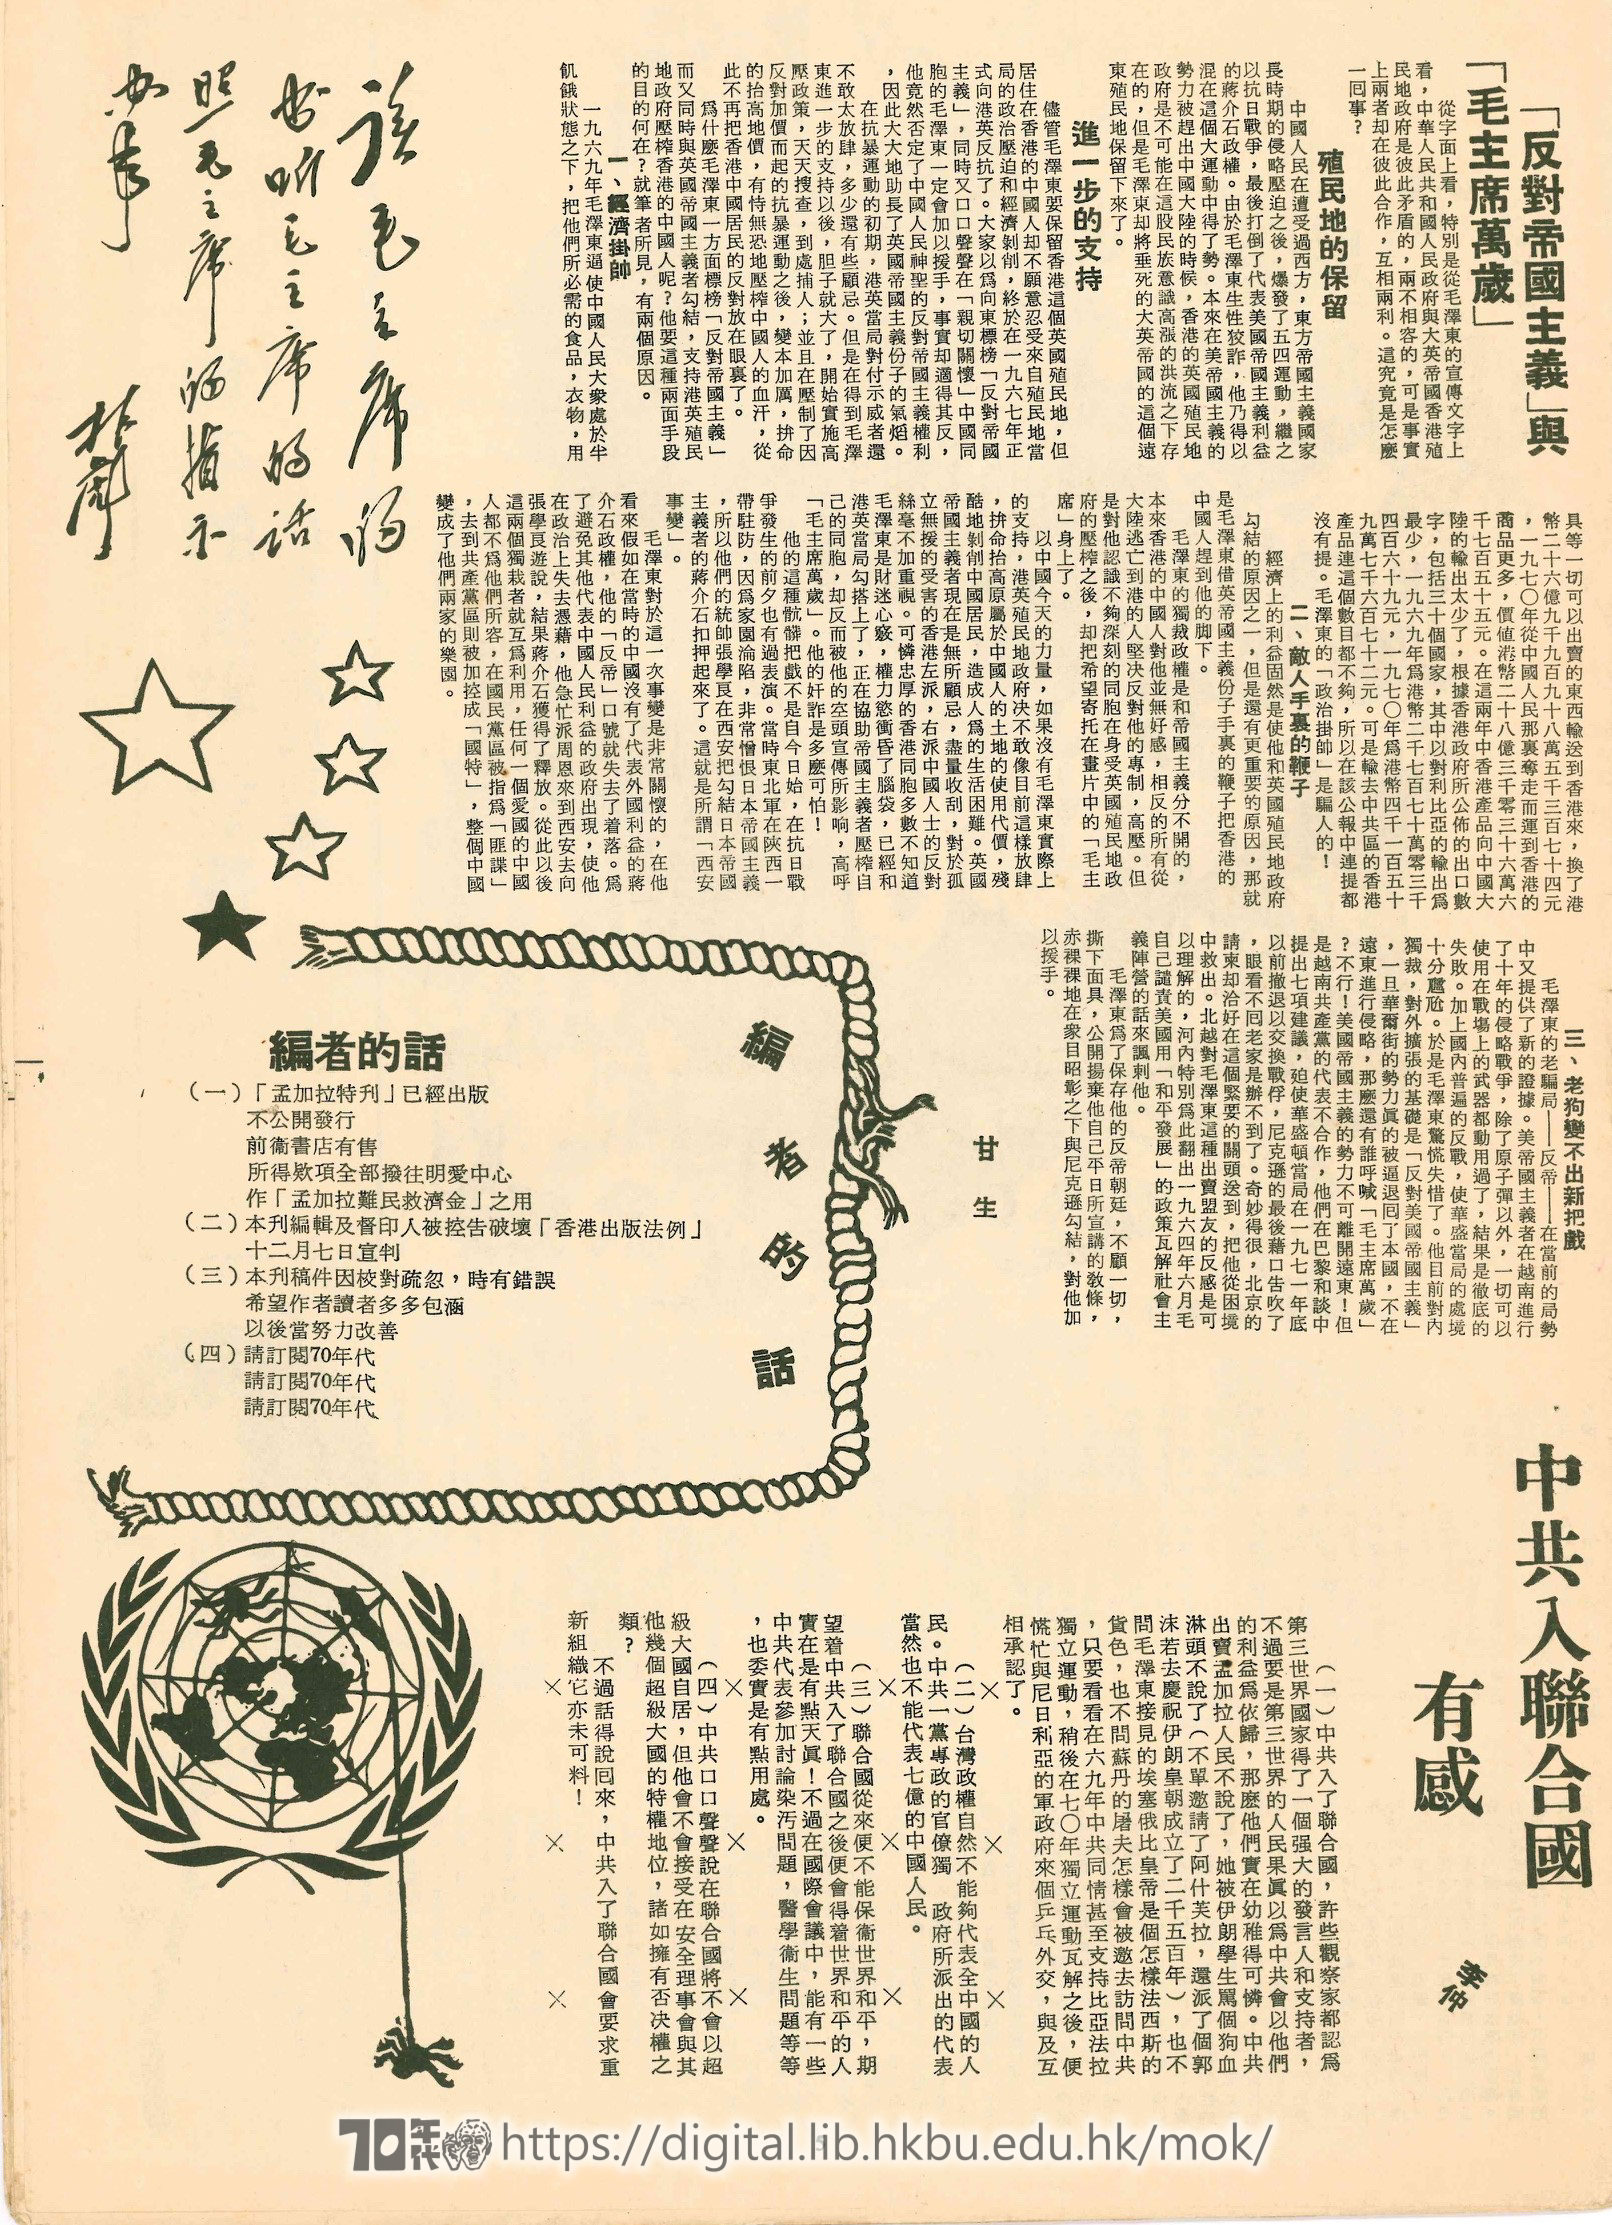  25 「反對帝國主義」與毛主席萬歲 甘生 